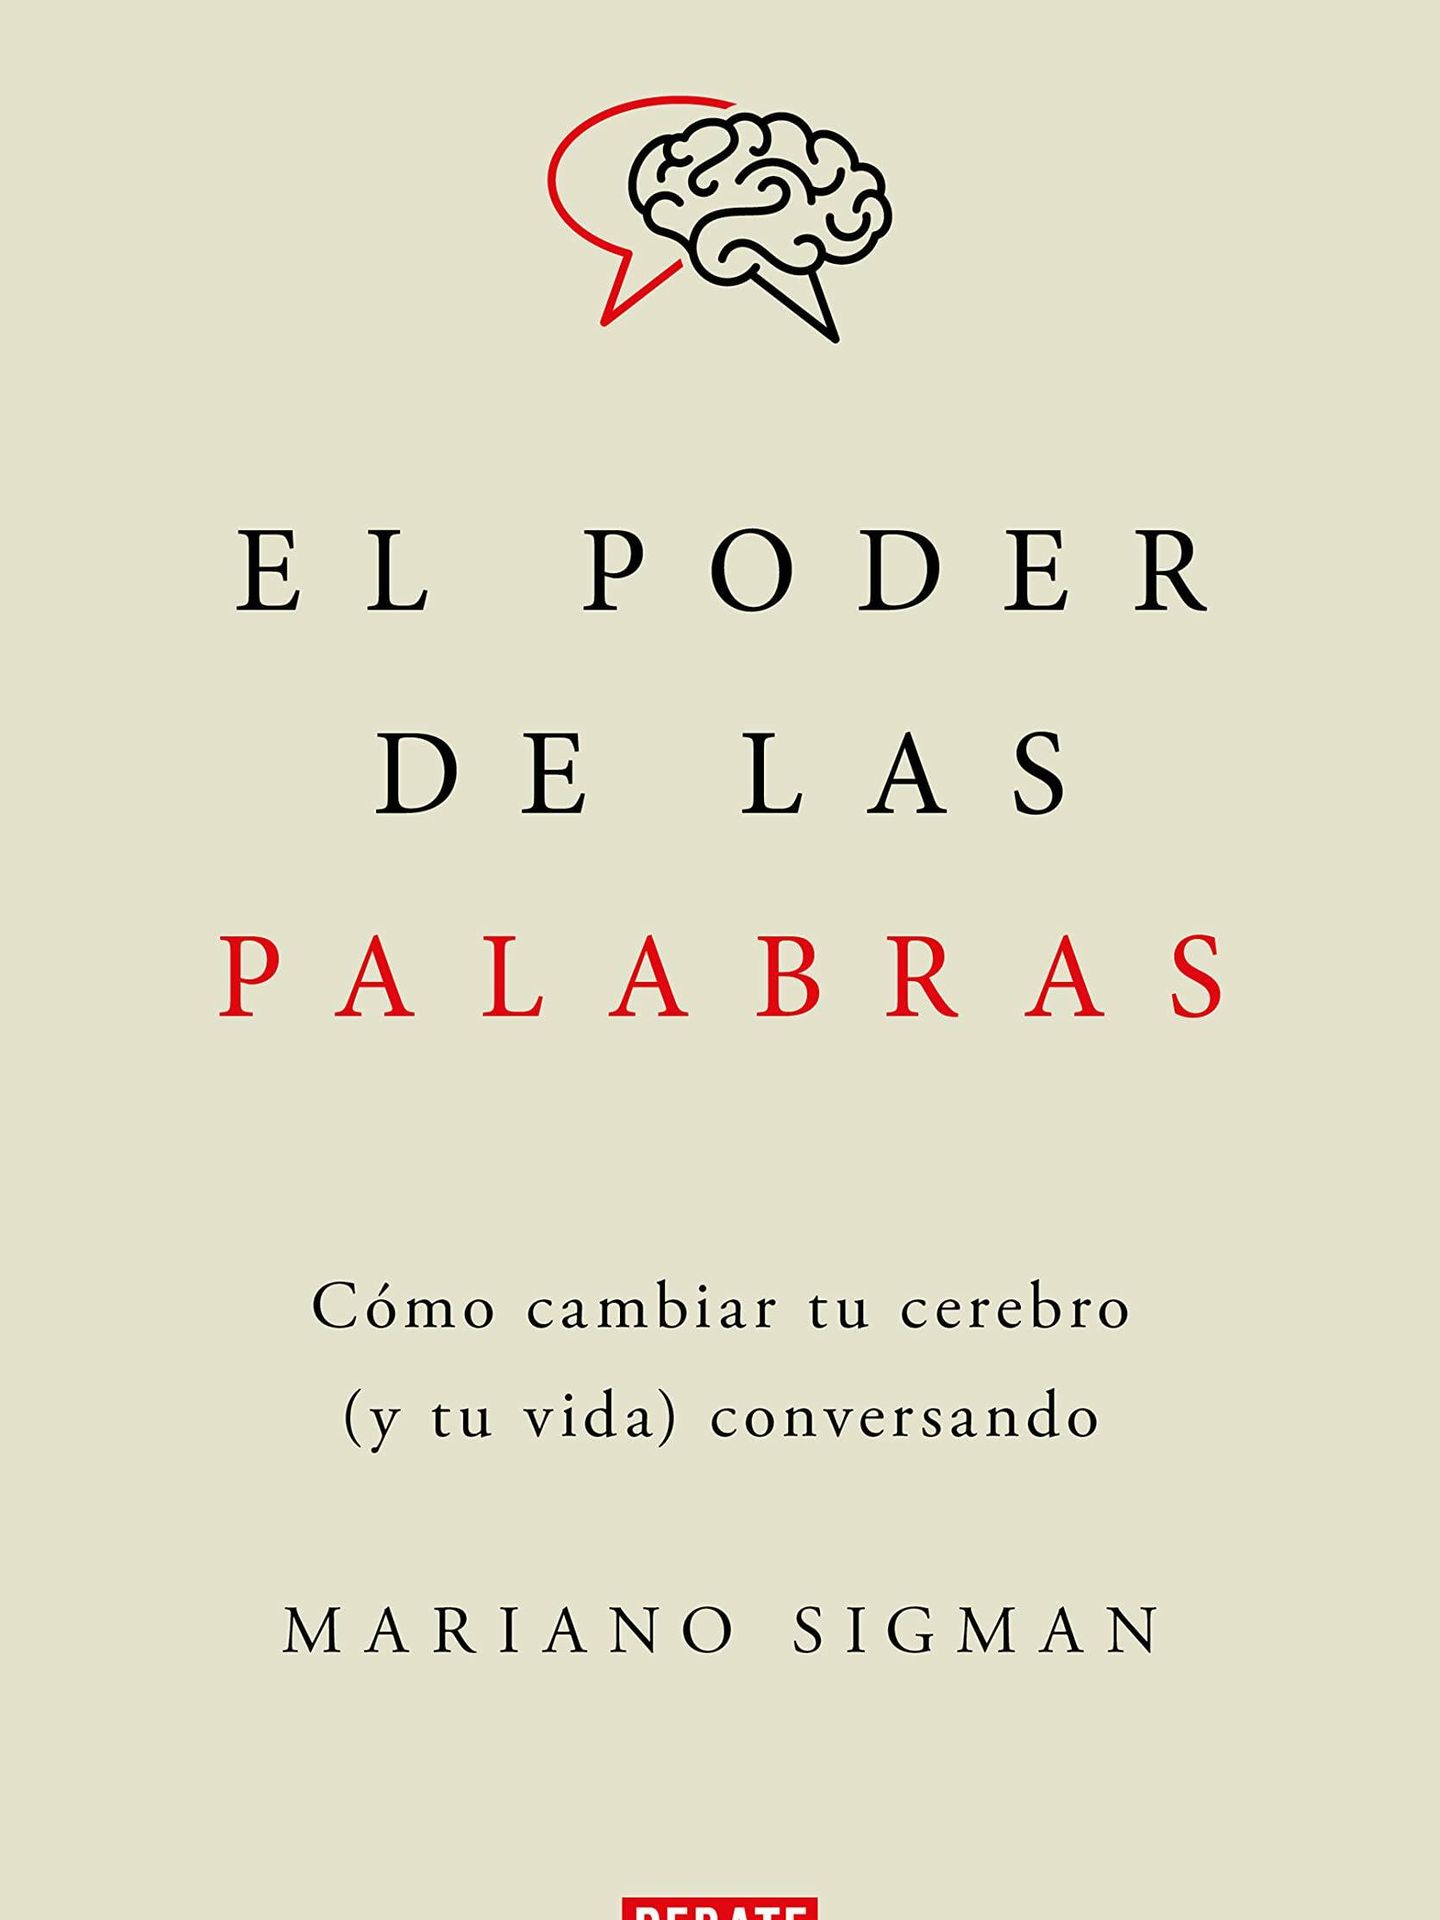 'El poder de las palabras', de Mariano Sigman.